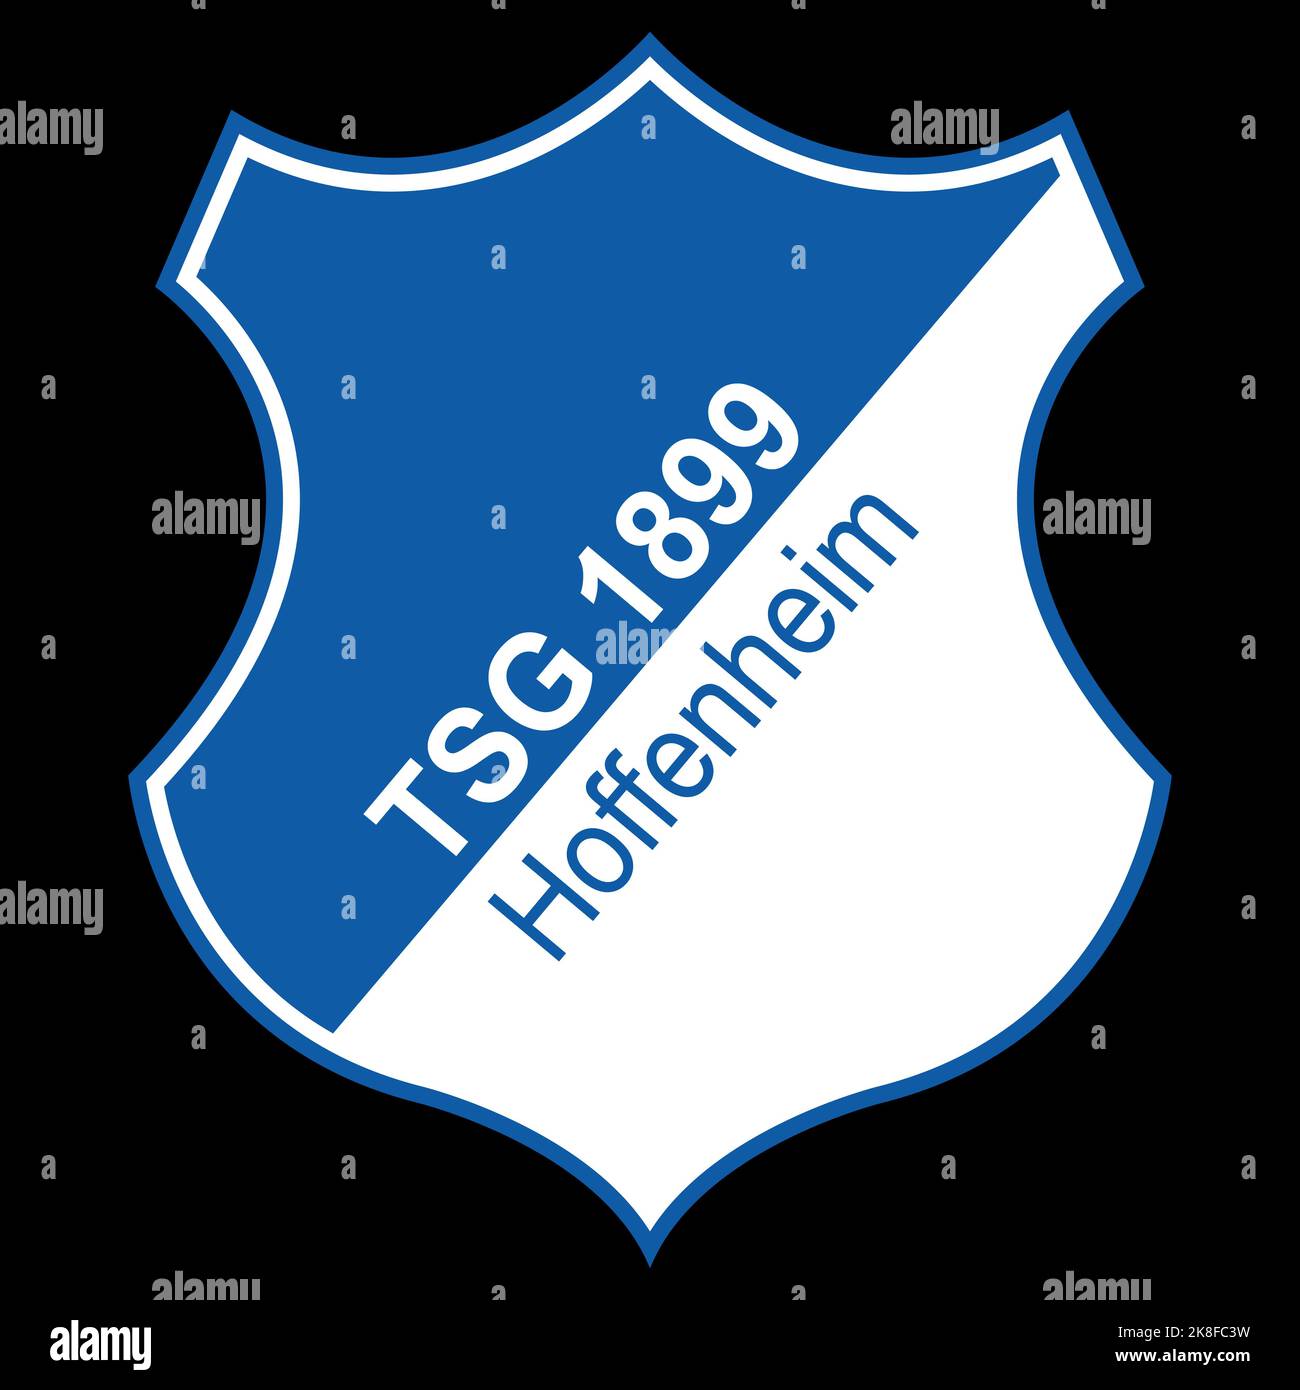 Francfort-sur-le-main, Allemagne - 10.23.2022 logo du club de football allemand Hoffenheim. Image vectorielle Illustration de Vecteur